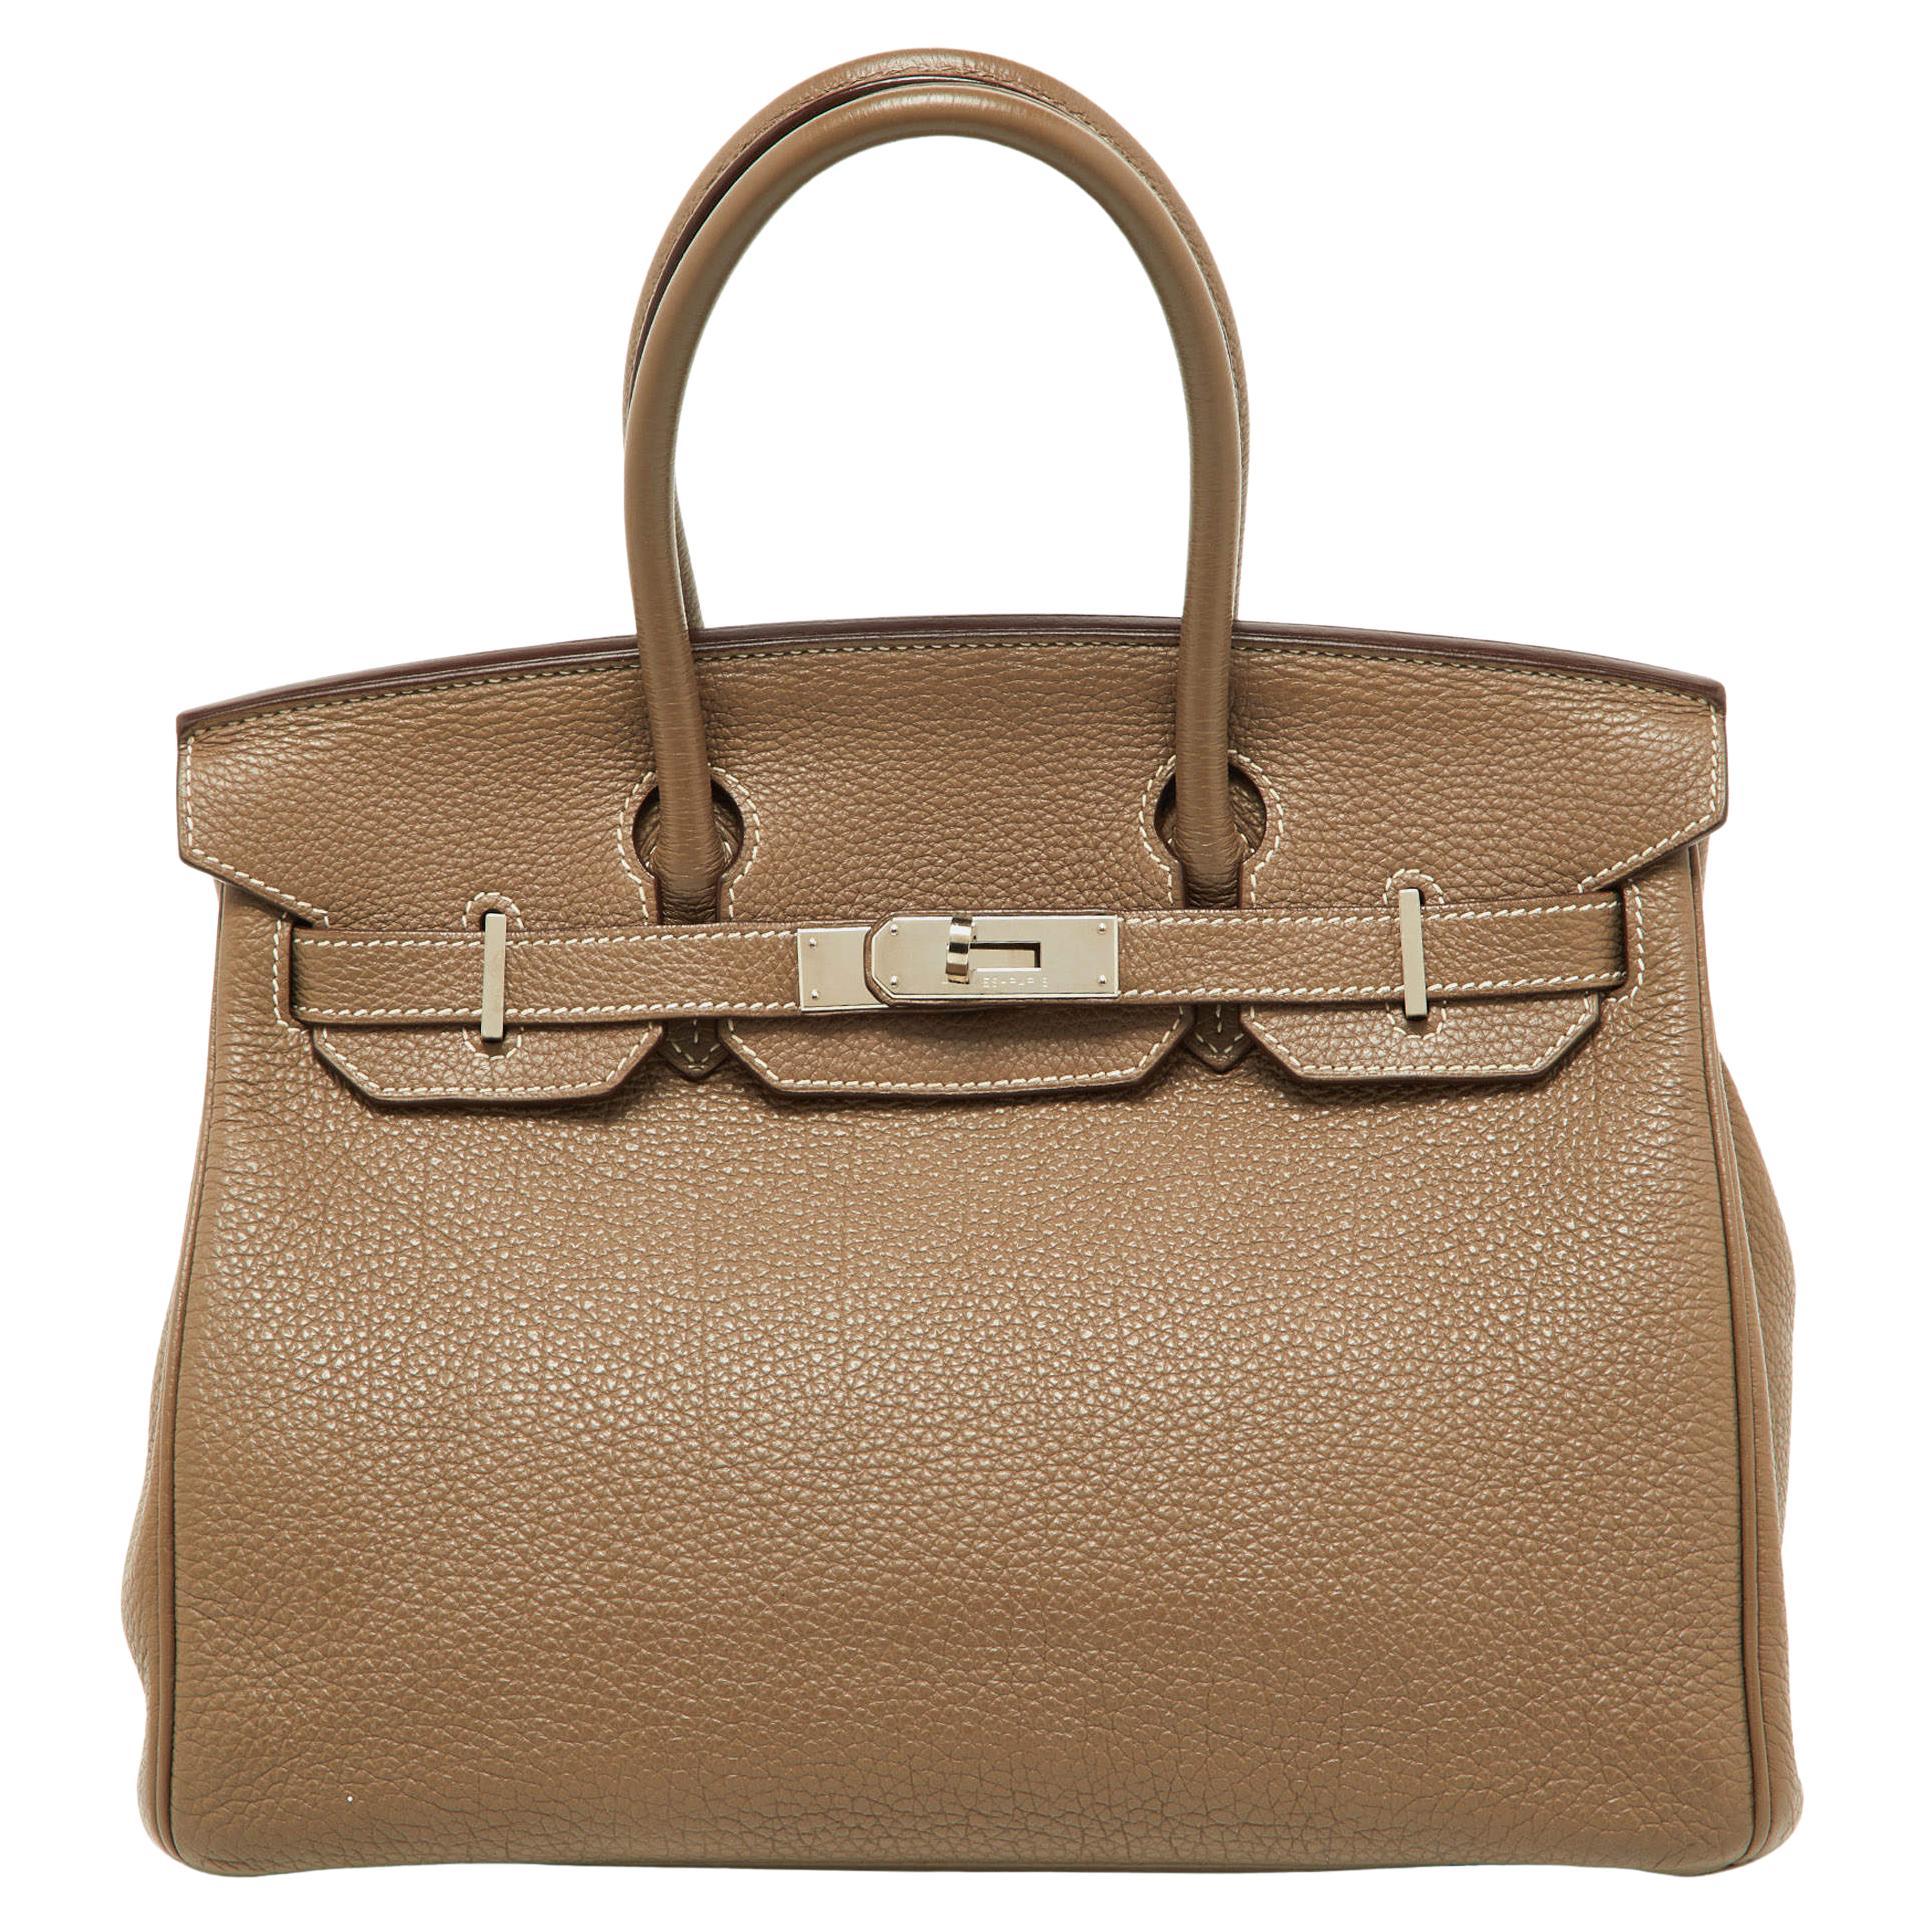 Hermes Etoupe Togo Leather Palladium Finish Birkin 30 Bag For Sale